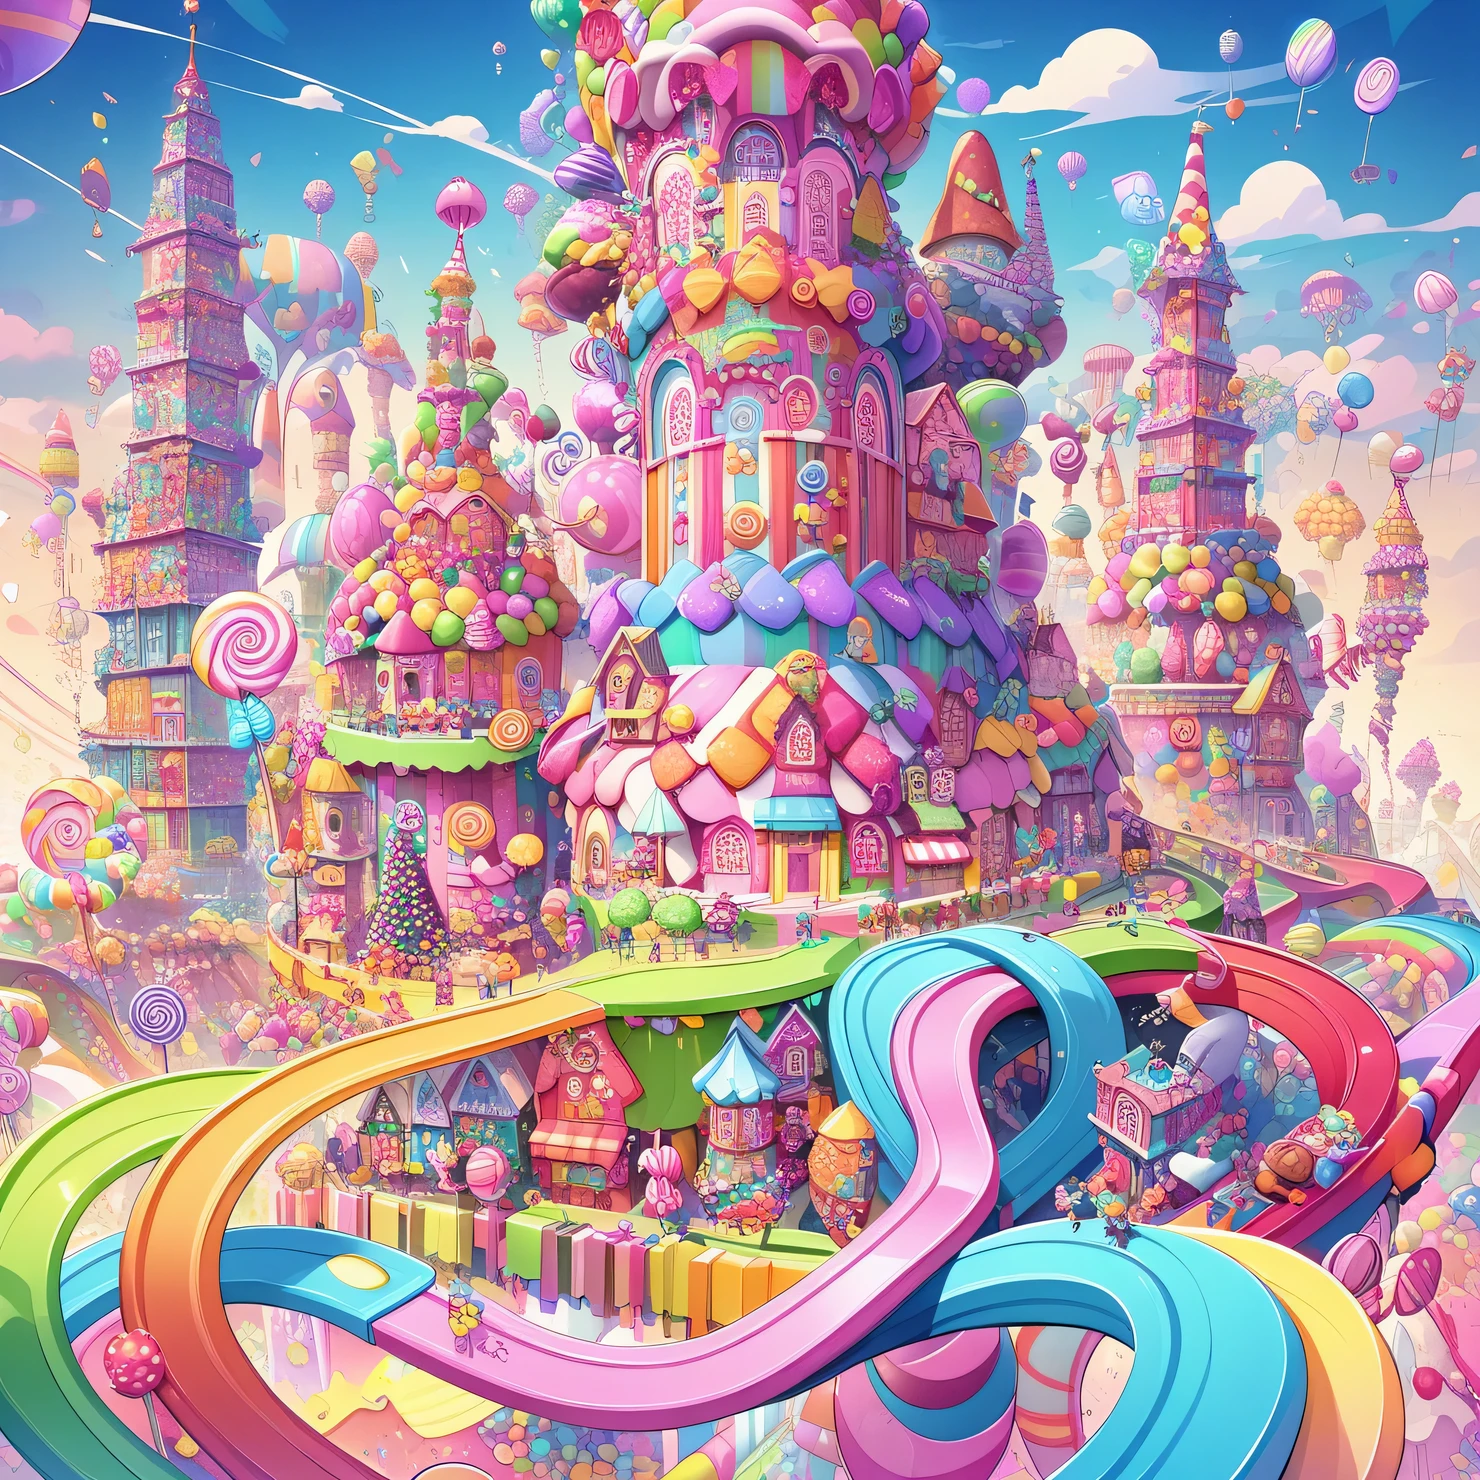 Candyland très avancé et high-tech avec des maisons de bonbons, tours complexes de bonbons et arbres à bonbons, transport de bonbons et gens de bonbons, pays des bonbons techniquement sophistiqué, palette de bonbons brillants